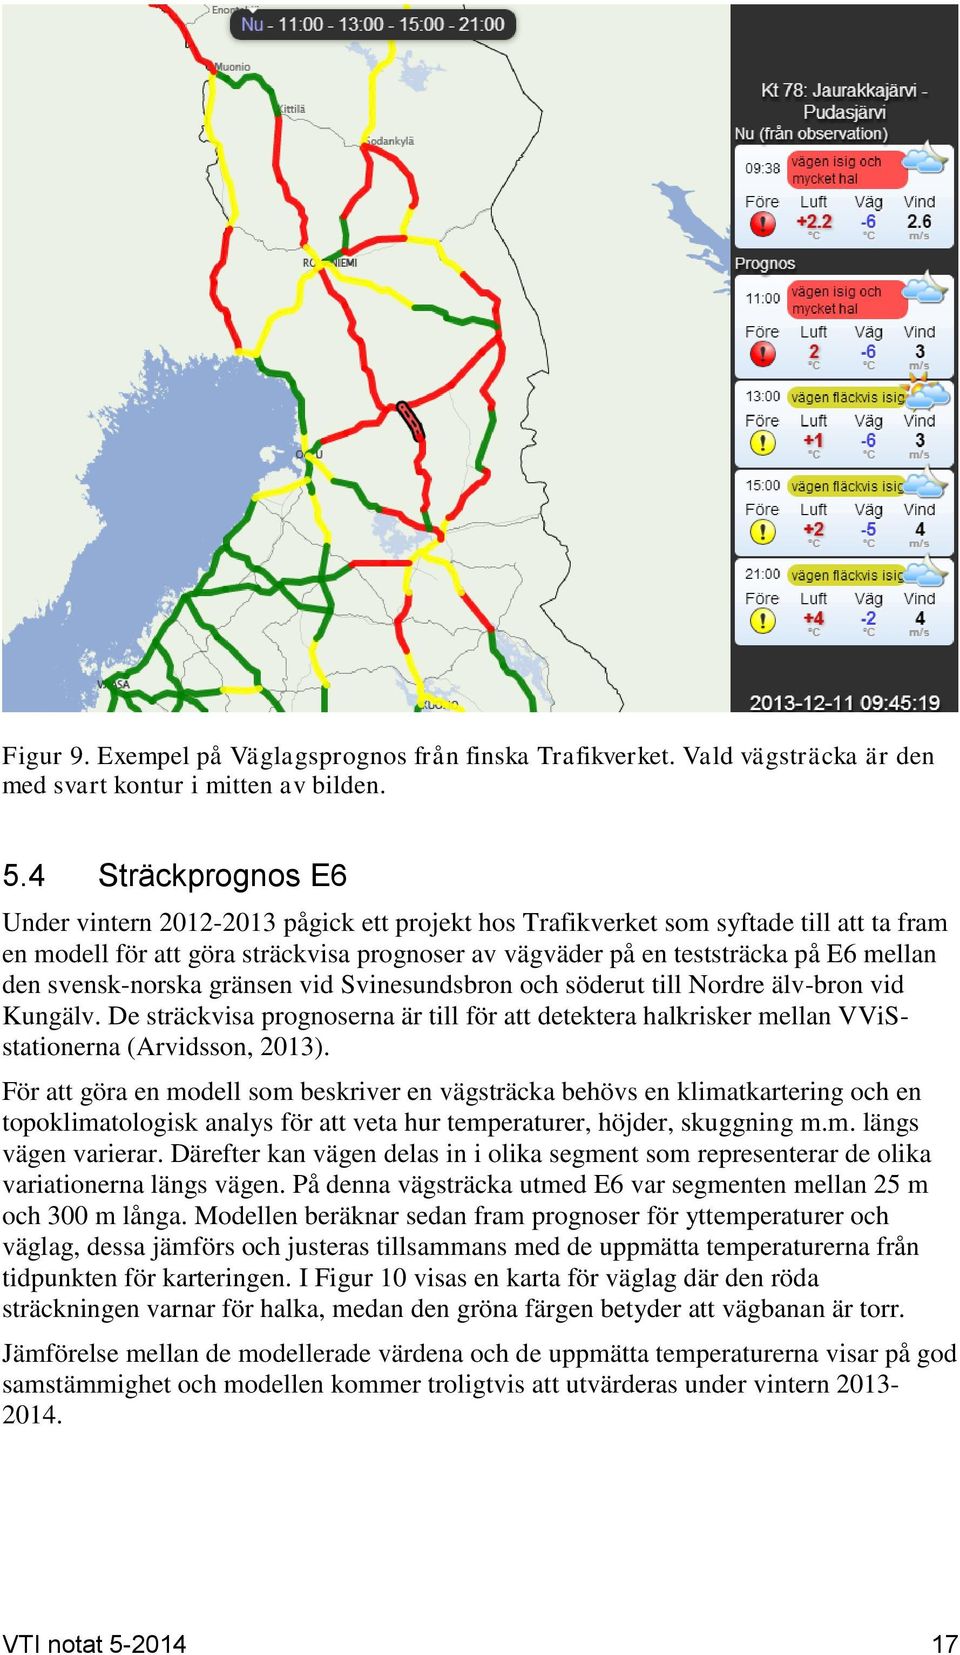 svensk-norska gränsen vid Svinesundsbron och söderut till Nordre älv-bron vid Kungälv. De sträckvisa prognoserna är till för att detektera halkrisker mellan VViSstationerna (Arvidsson, 2013).